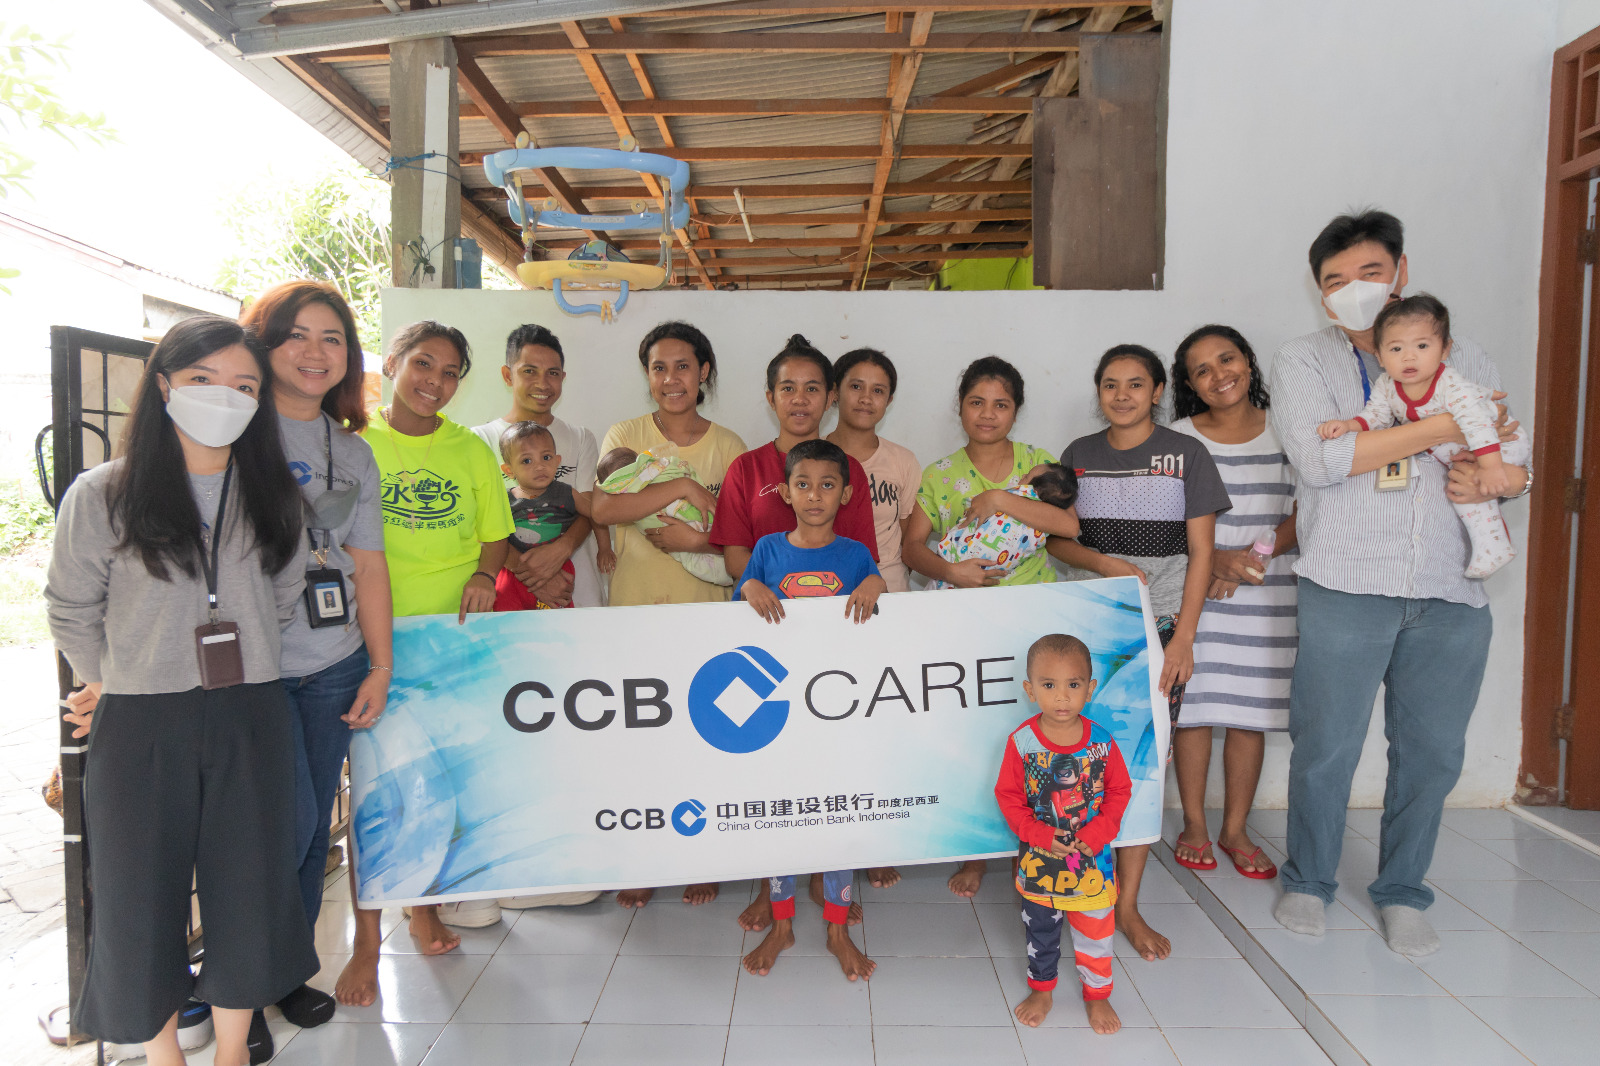 CCBI Care - Orphanage of Tangan Kasih, Tangerang